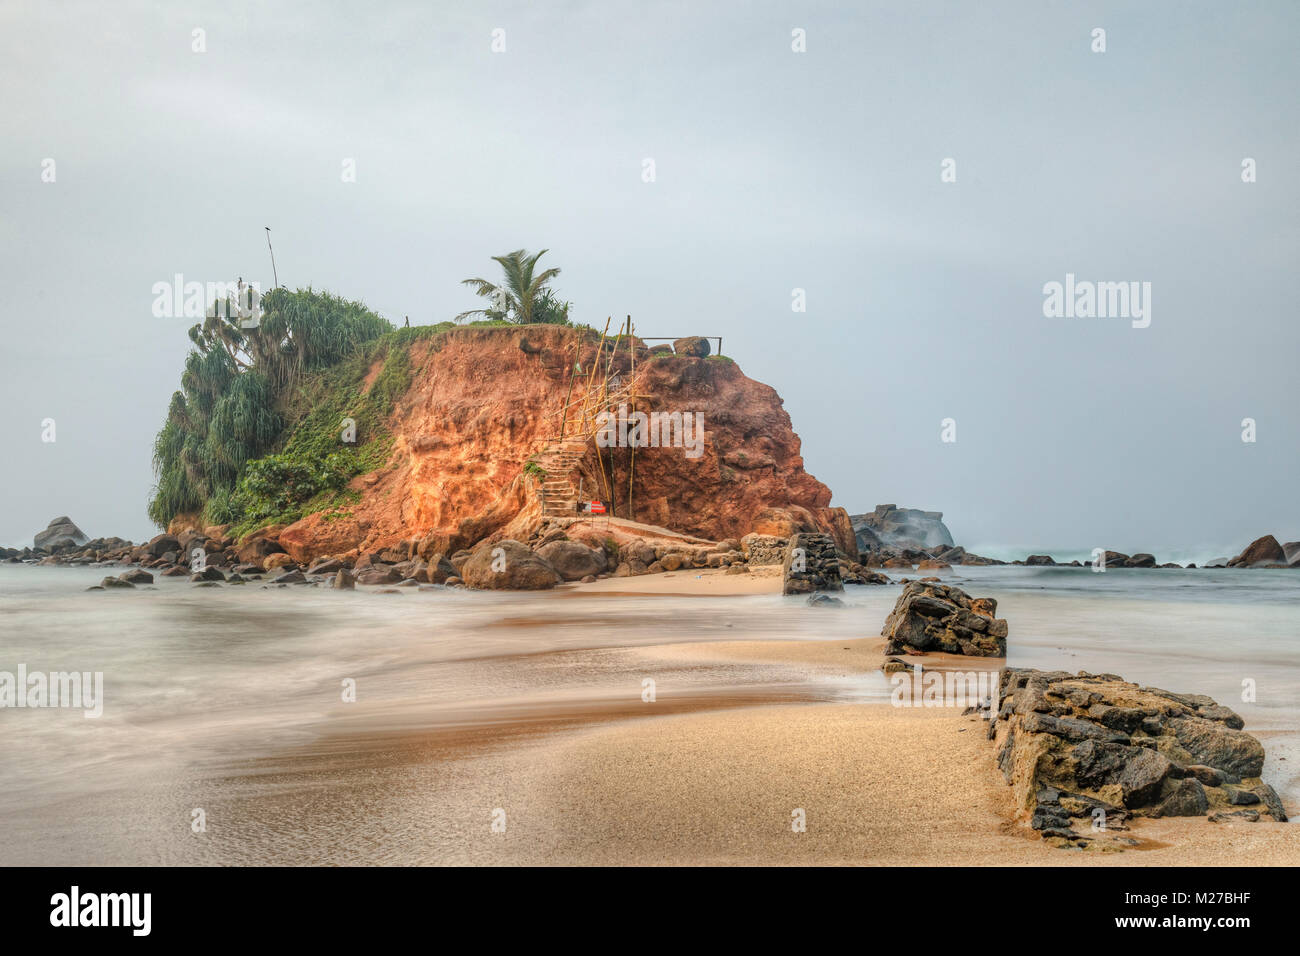 Mirissa, beach, Sri Lanka, Asia Stock Photo